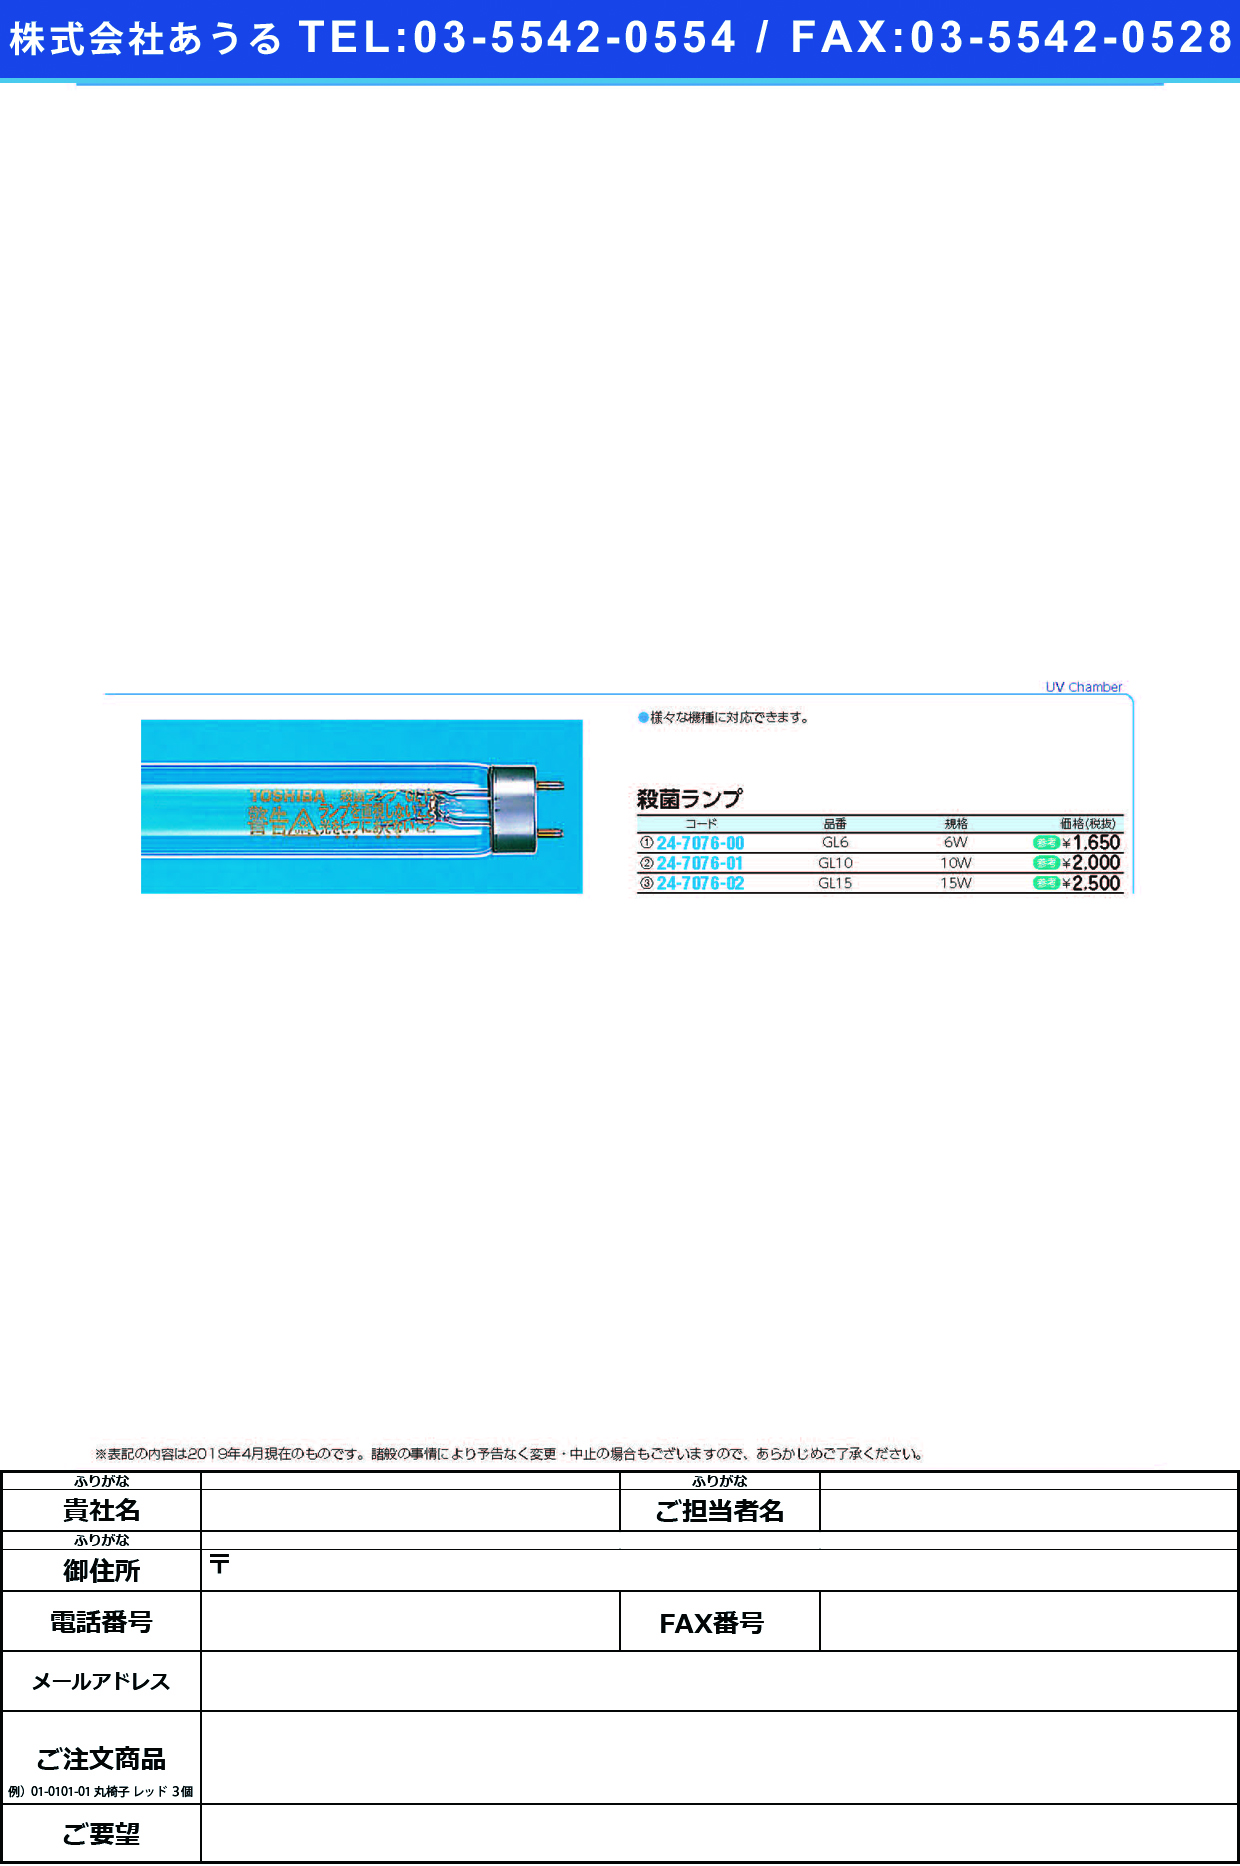 (24-7076-01)殺菌ランプGL10(10W)TOSHIBA ｻｯｷﾝﾗﾝﾌﾟ(松吉医科器械)【1本単位】【2019年カタログ商品】